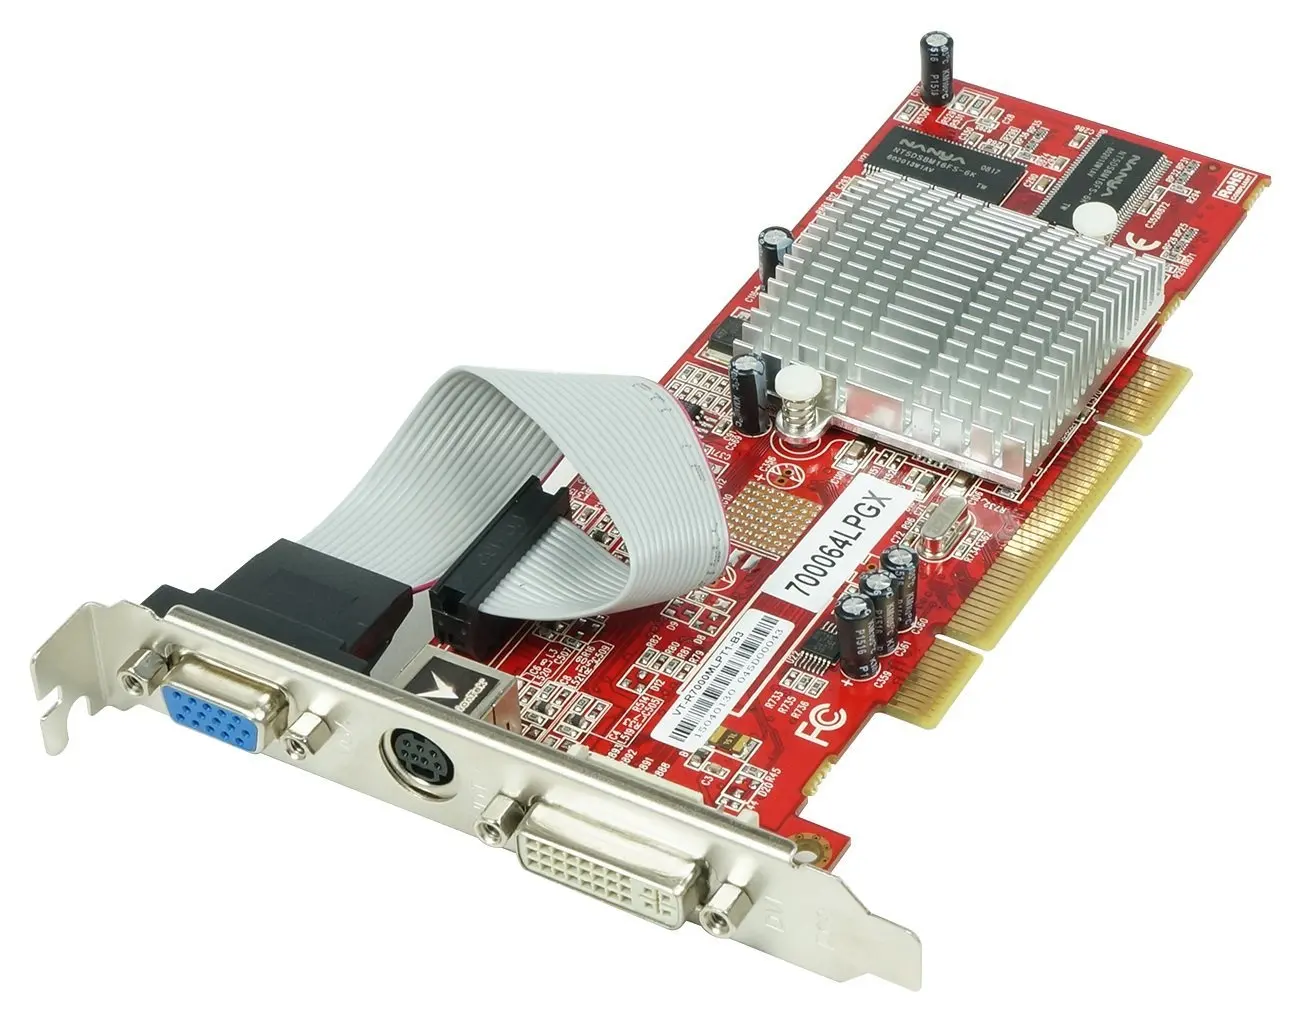 Ati radeon ноутбук. Видеокарта ATI Radeon 3000 Graphics. Видеокарта AGP 512mb ATI Radeon hd3450. Radeon 7000 PCI. ATI Radeon 7500le 64mb DDR PCI.